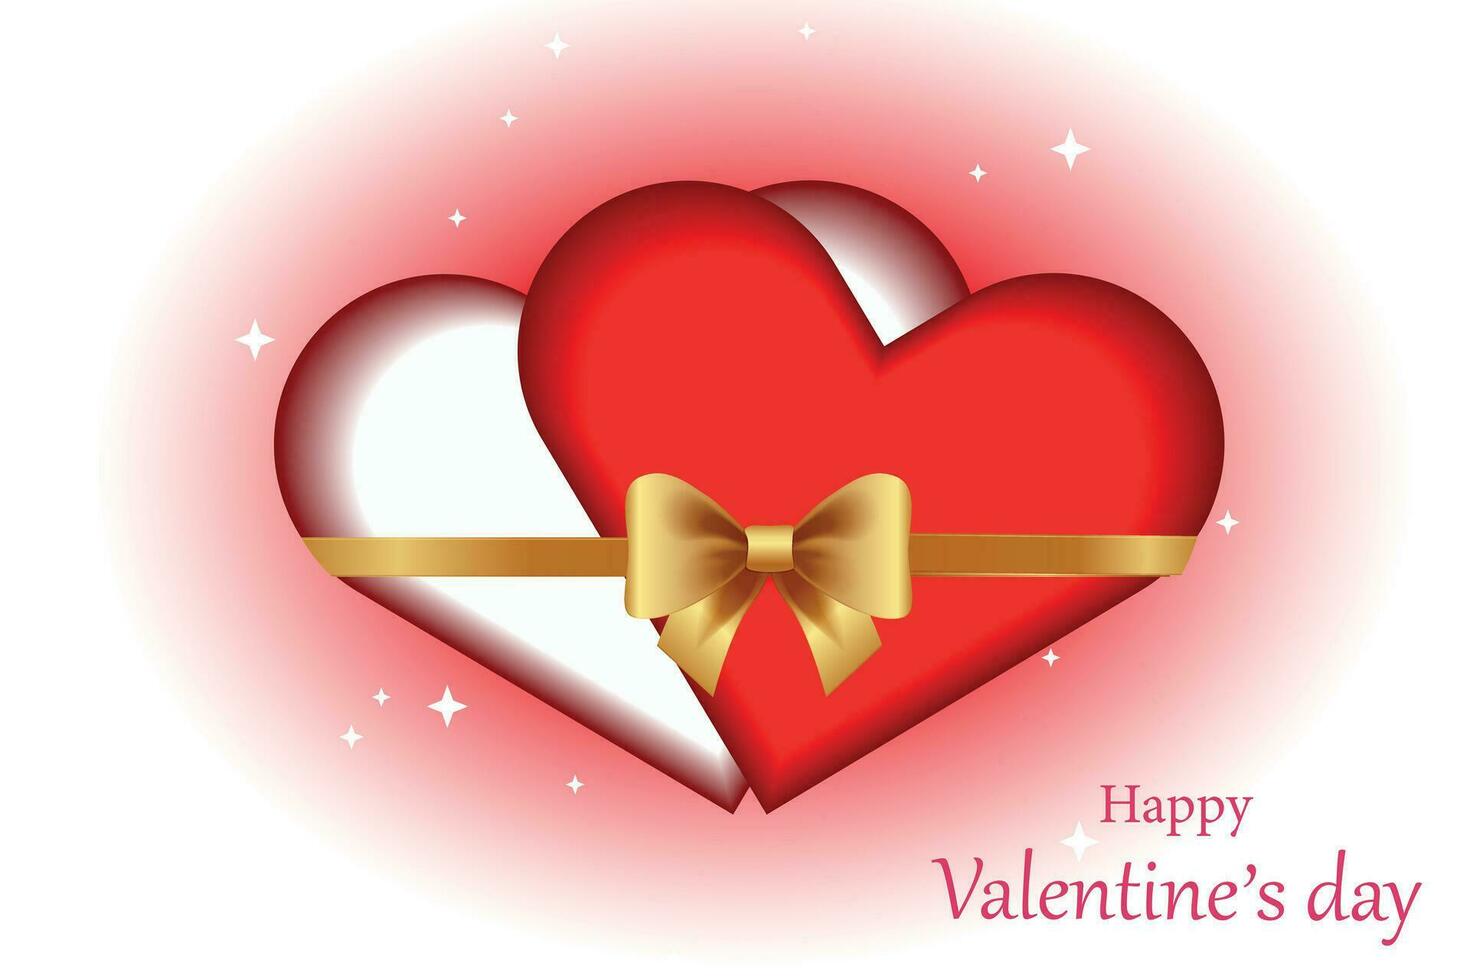 två kärleksfull hjärtan bunden med en gyllene band evigt tillsammans, romantisk illustration.valentines dag begrepp. vektor